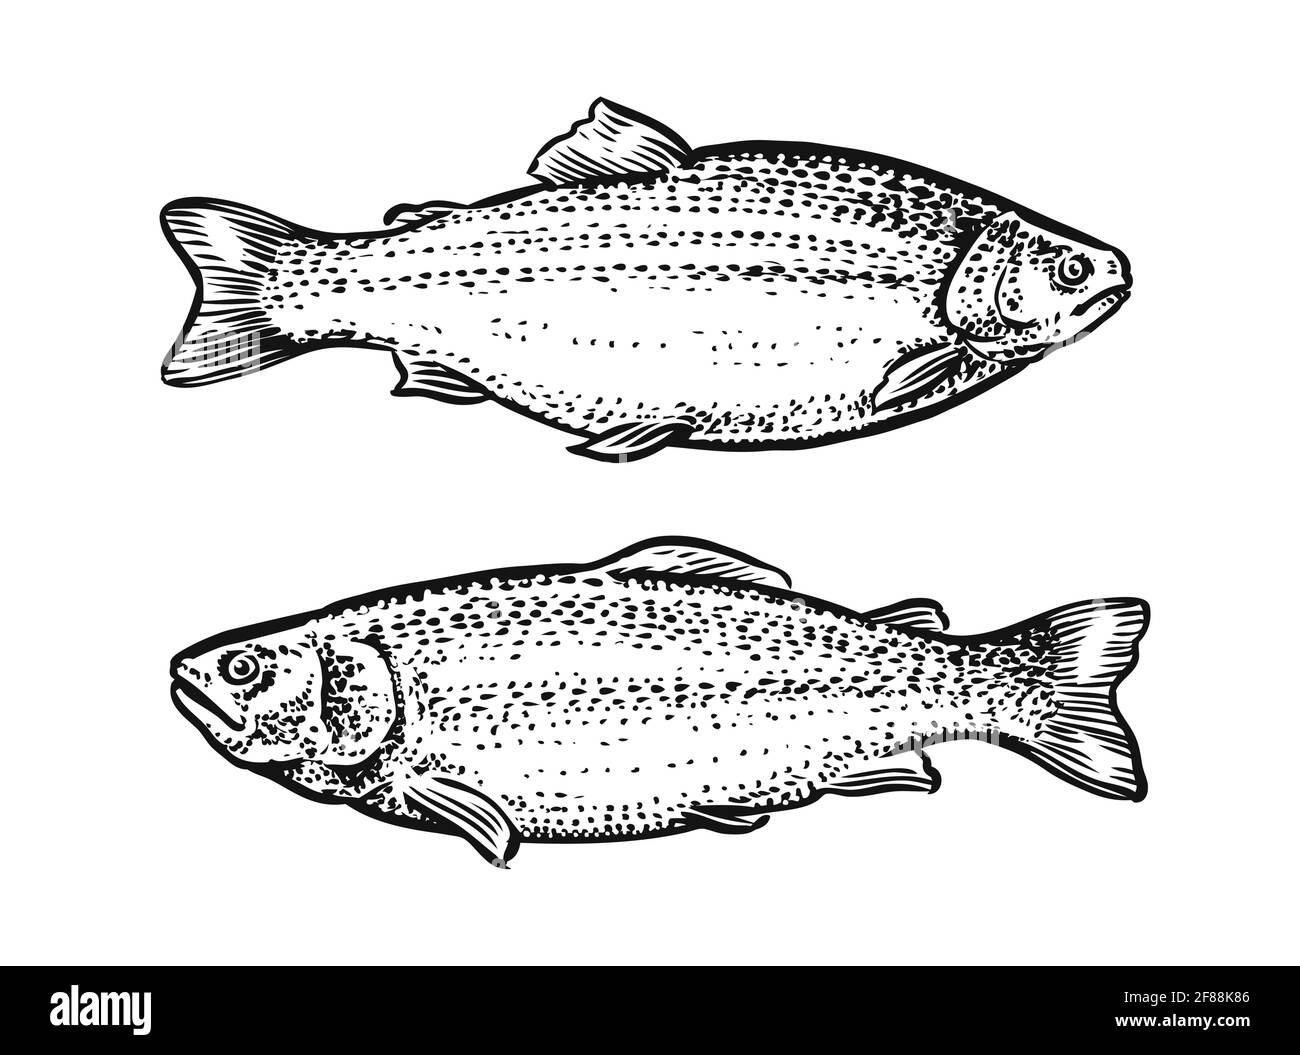 Esquisse de poisson. Illustration vectorielle dessinée à la main de truite, saumon isolé sur fond blanc Illustration de Vecteur